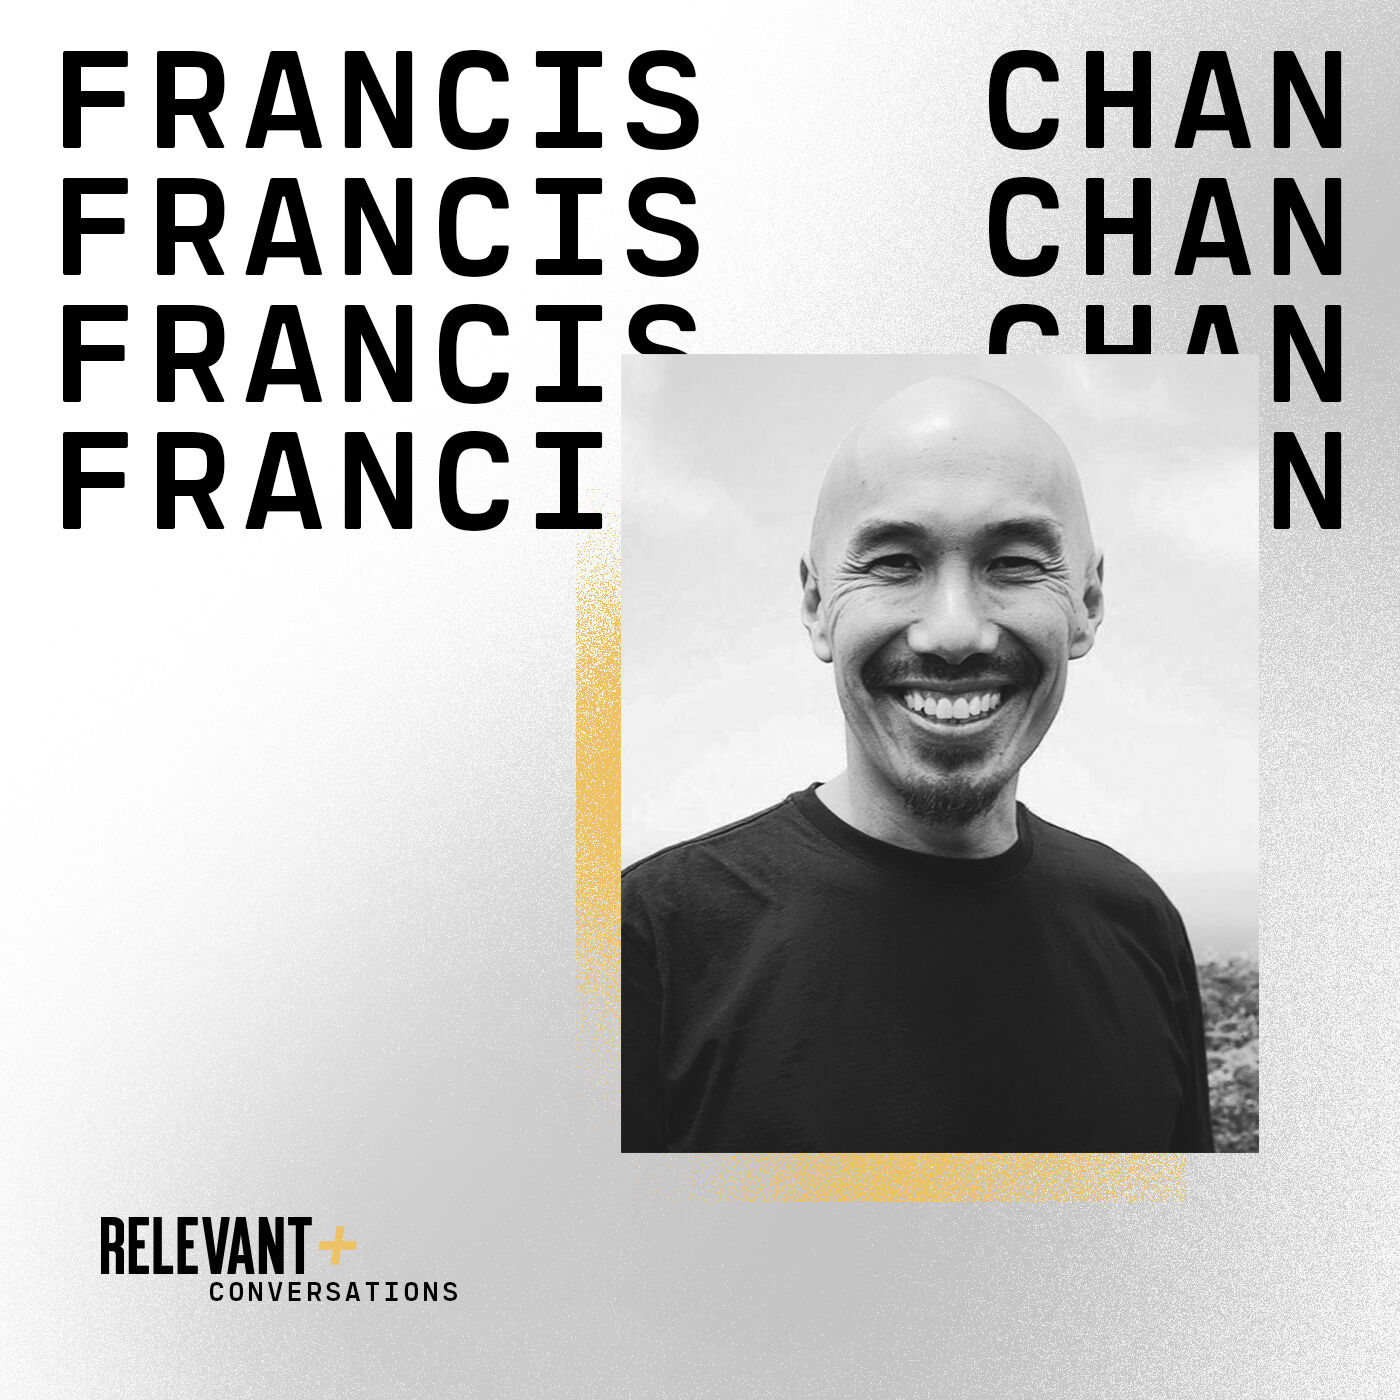 Francis Chan